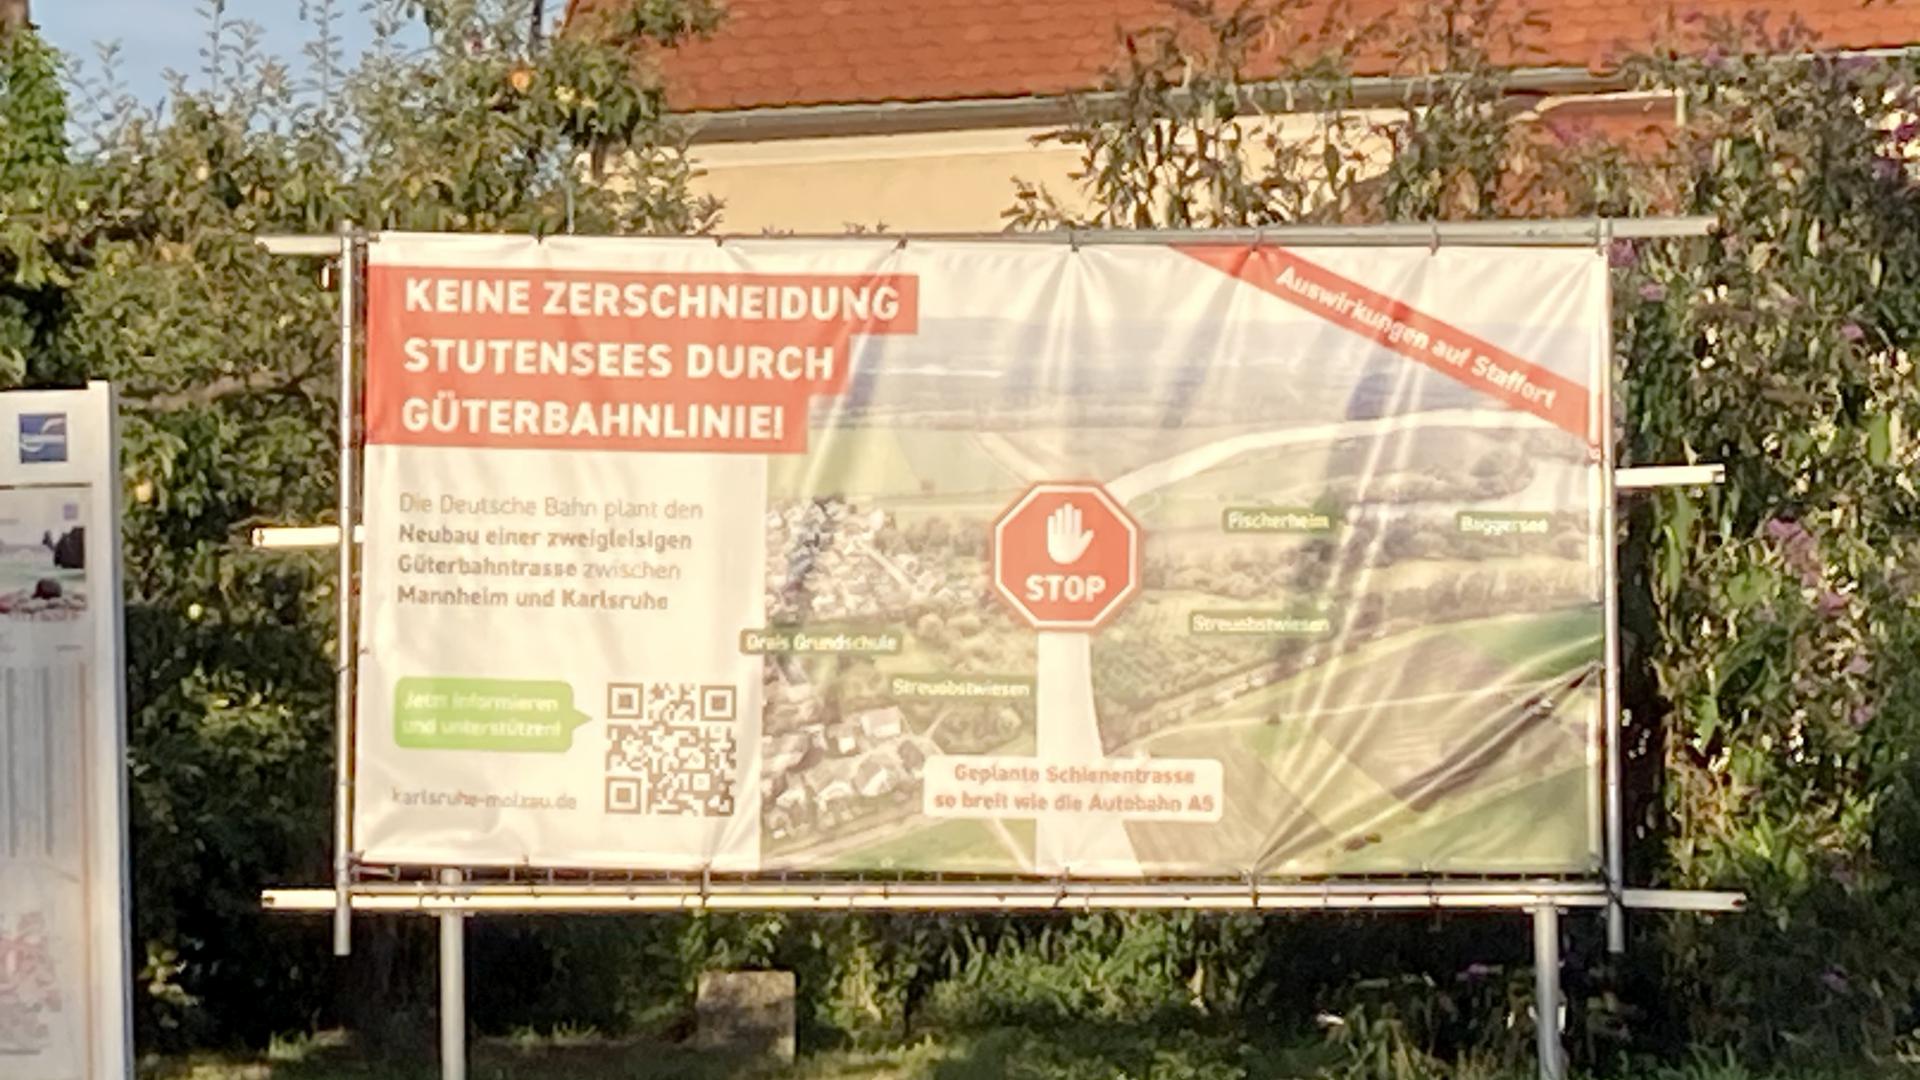 Die Bürgerinitiative Karlsruhe-Molzau wehrt sich gegen das Zerschneiden von Ortschaften durch das Bahnprojekt Mannheim-Karlsruhe.